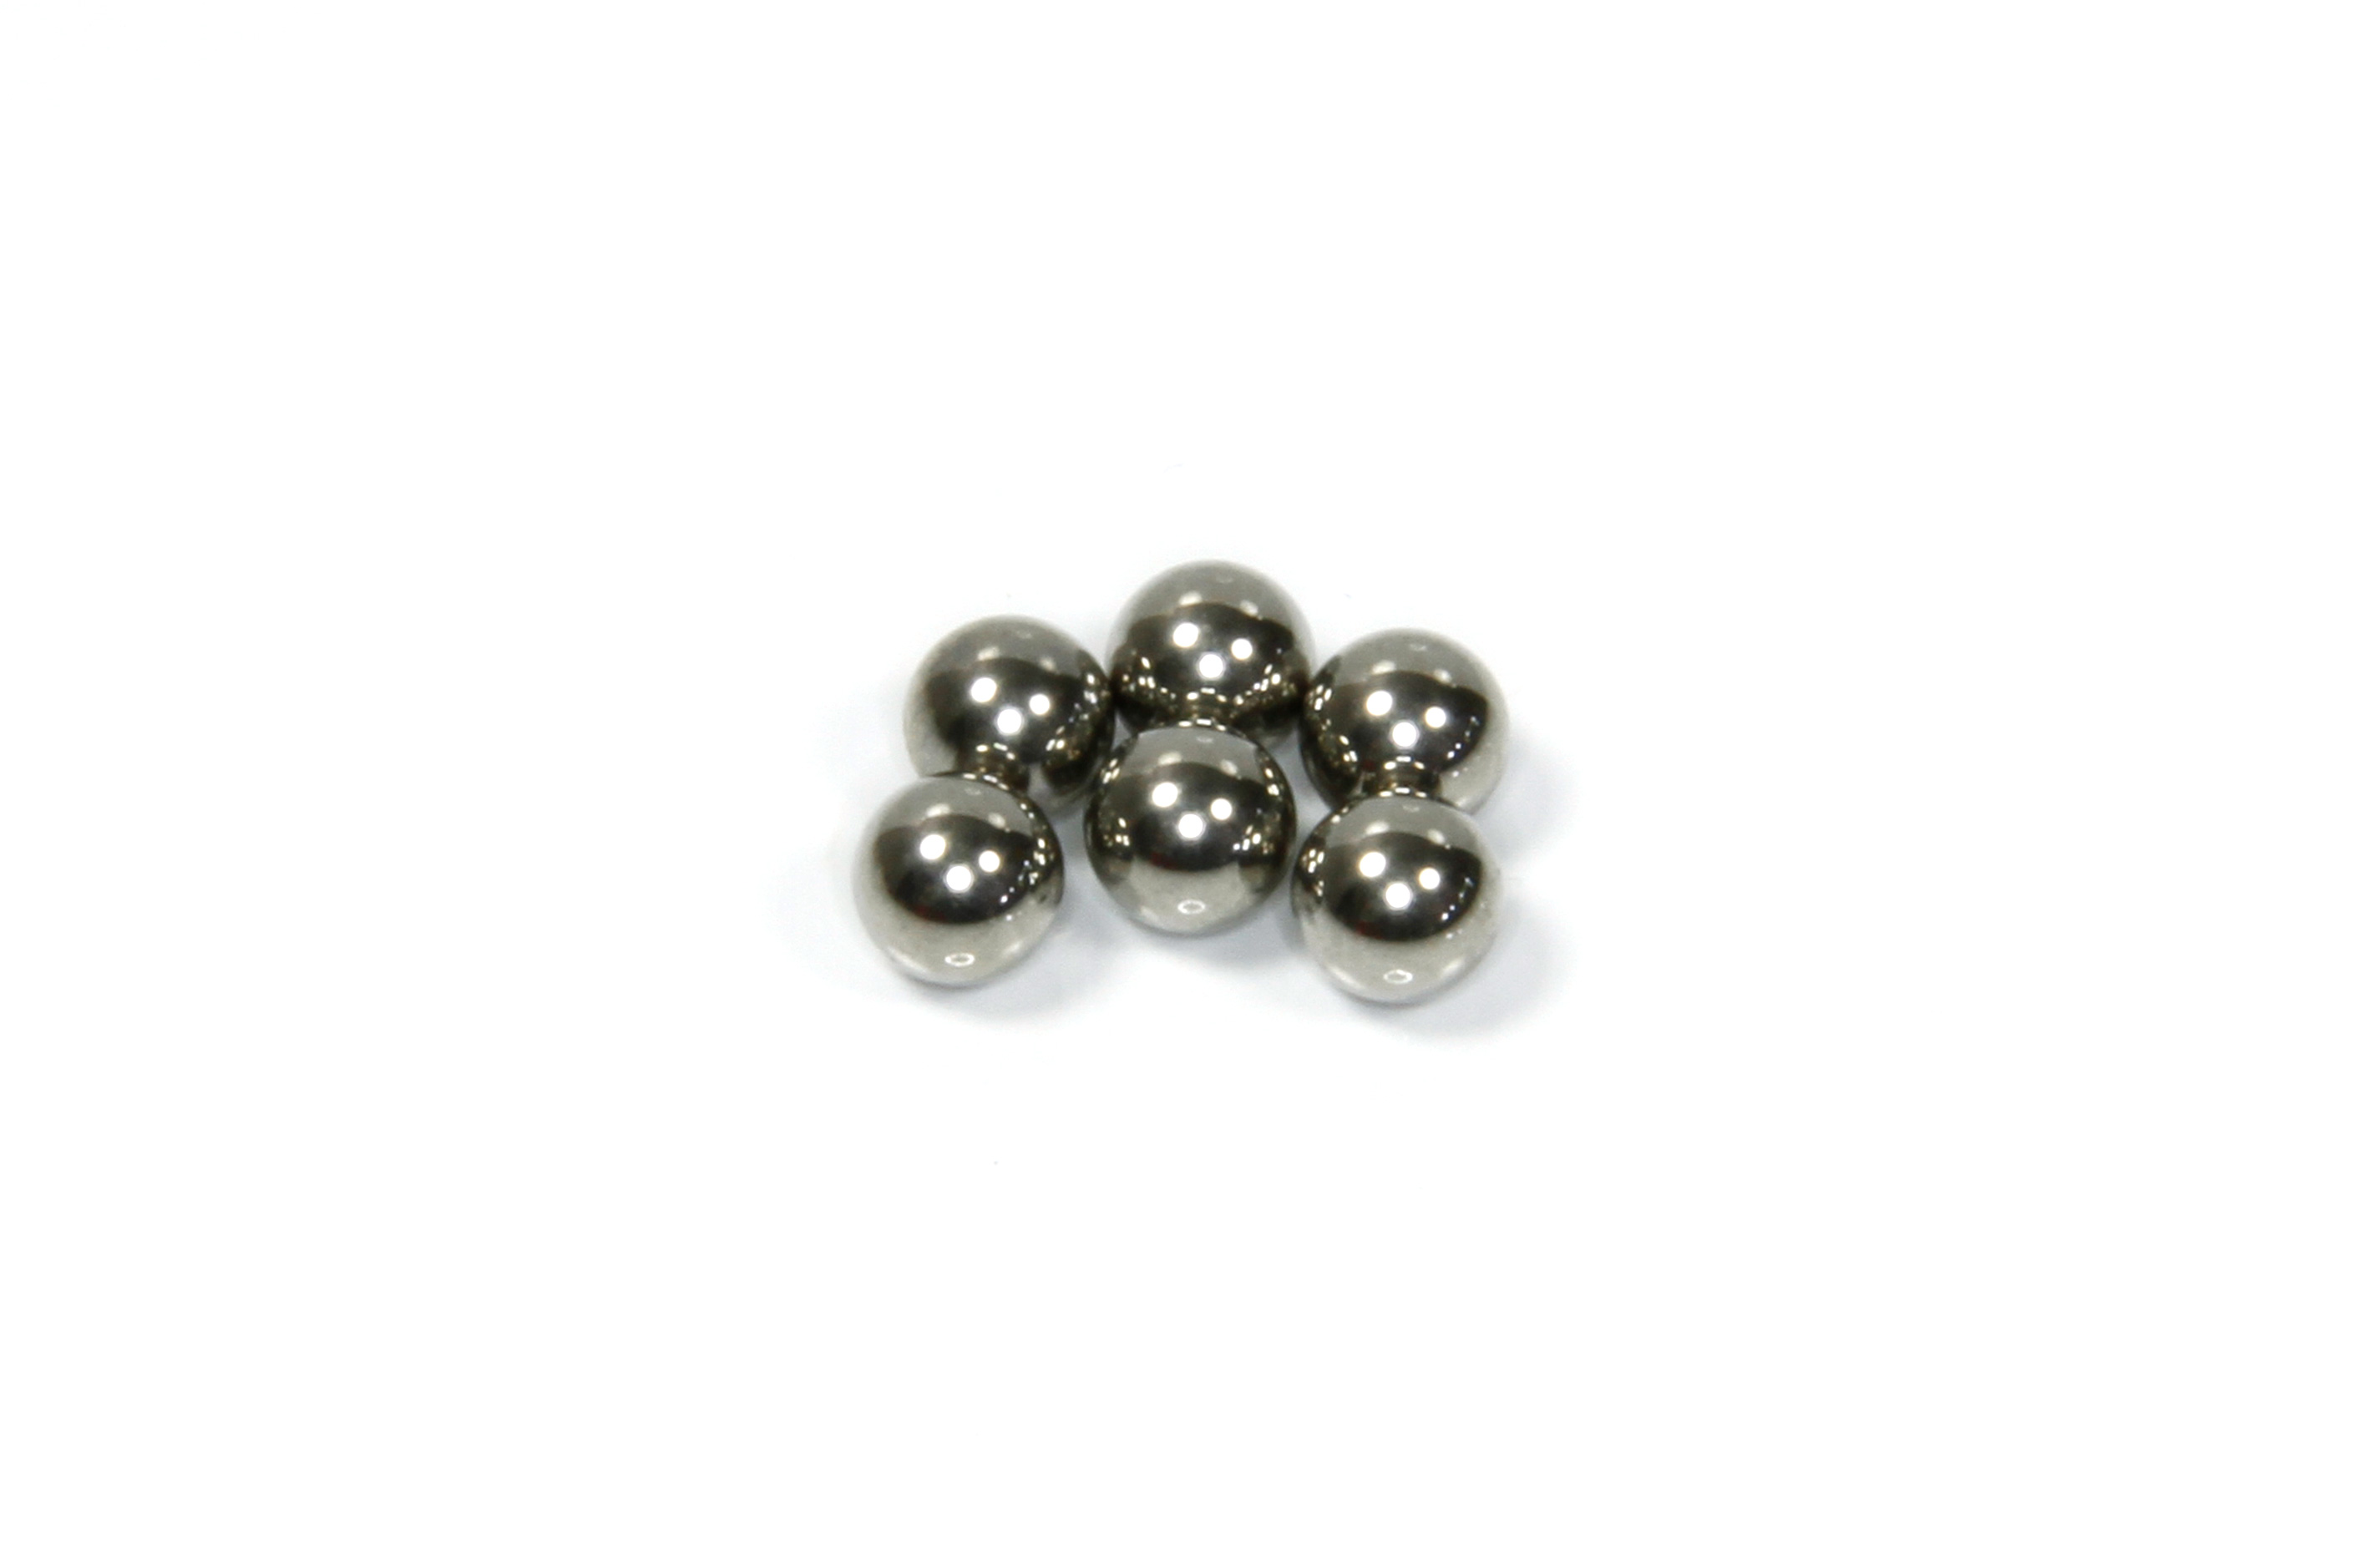 2012-133 Mecatech Balls for Drive Shaft